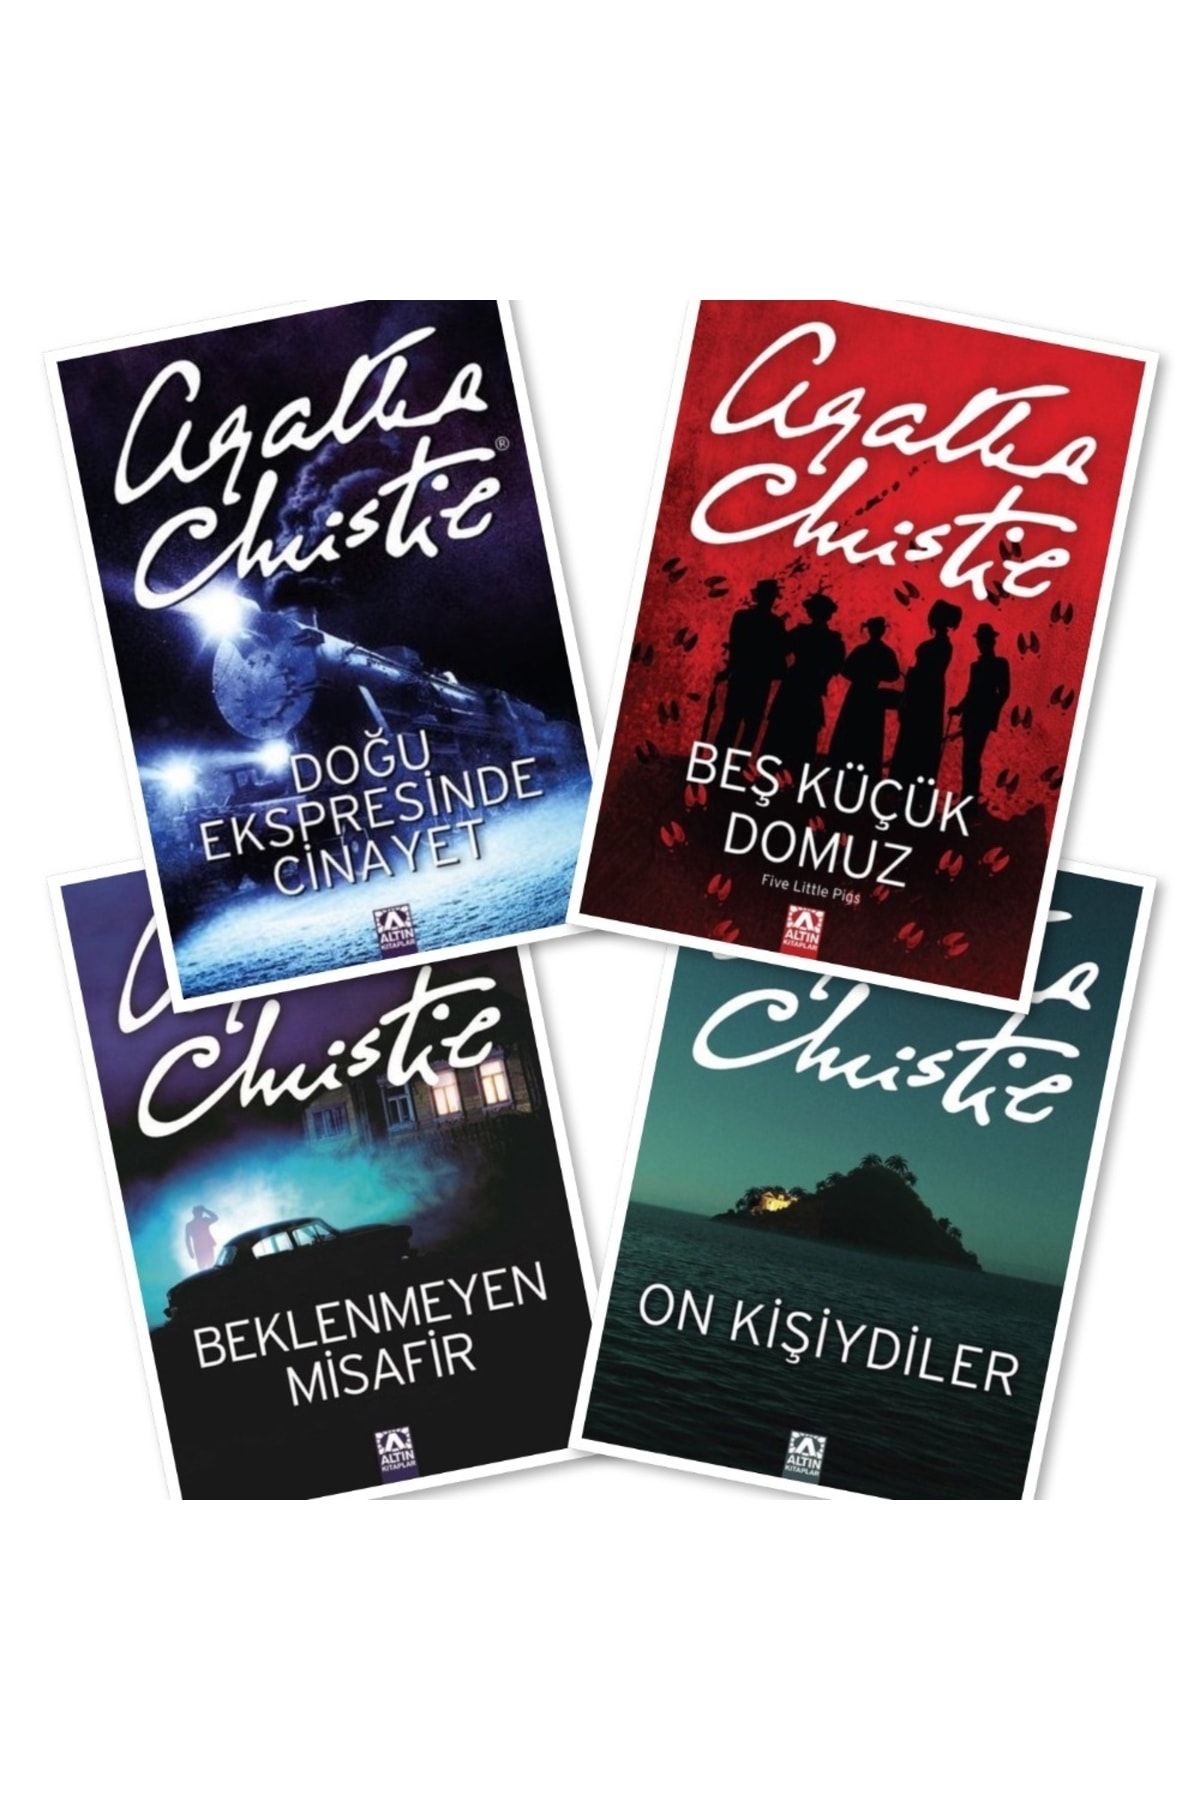 Altın Kitaplar Doğu Ekspresinde Cinayet - Beş Küçük Domuz - Beklenmeyen Misafir - On Kişiydiler, Agatha Christie